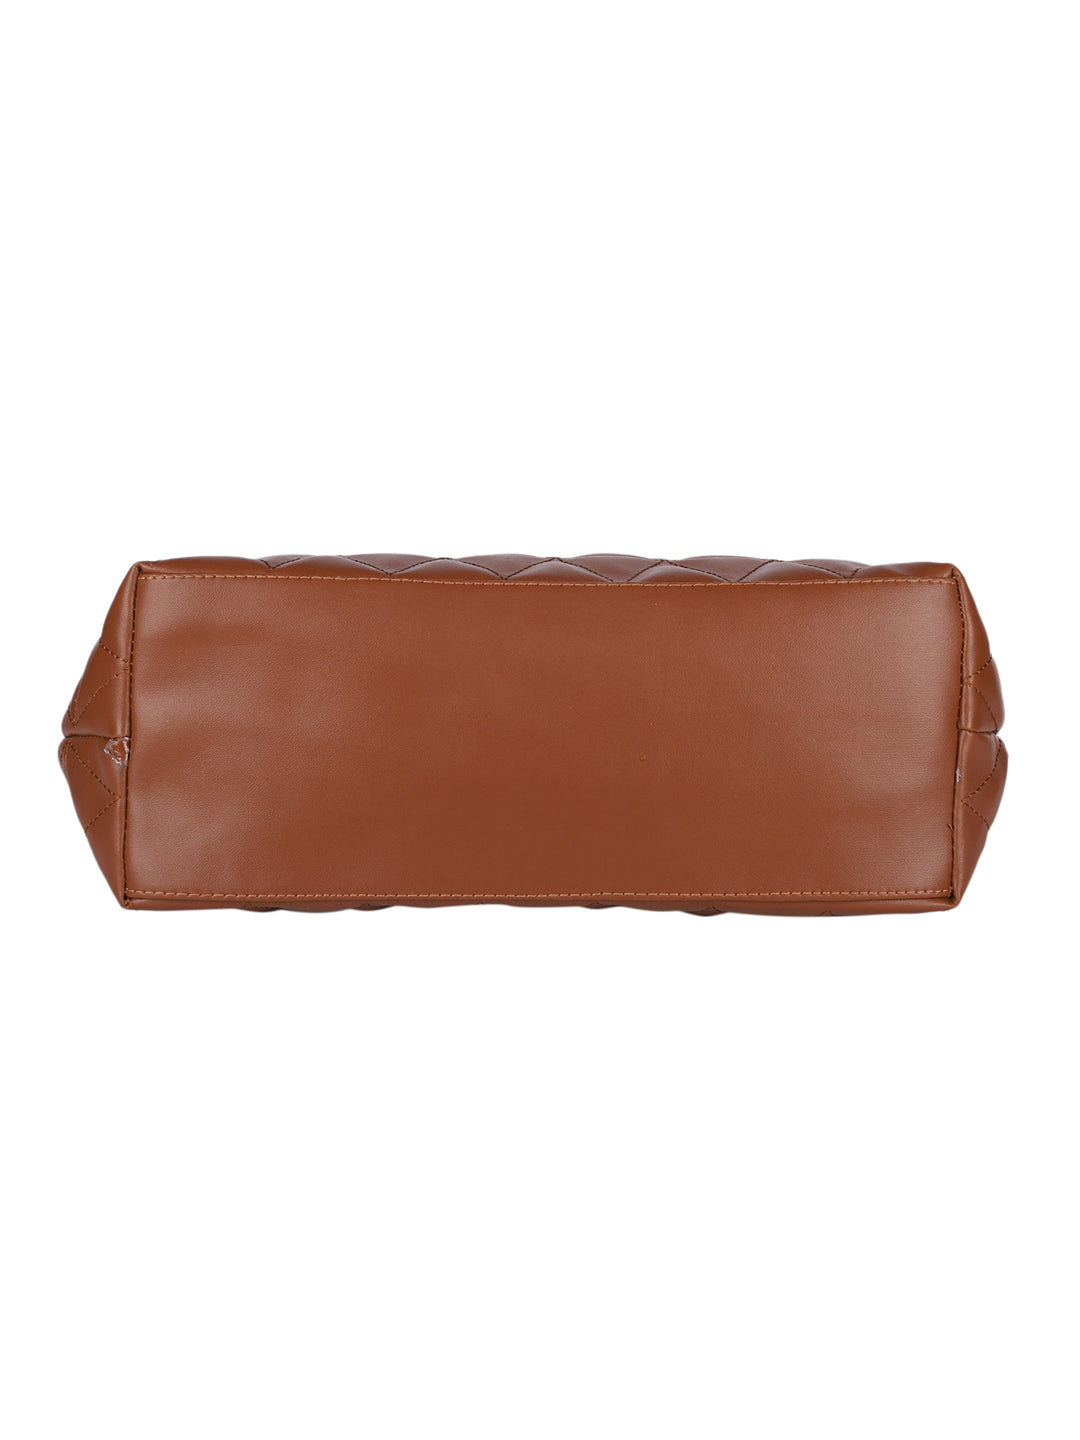 MINI WESST BROWN Solid Shoulder Bag(MWHB224BR)